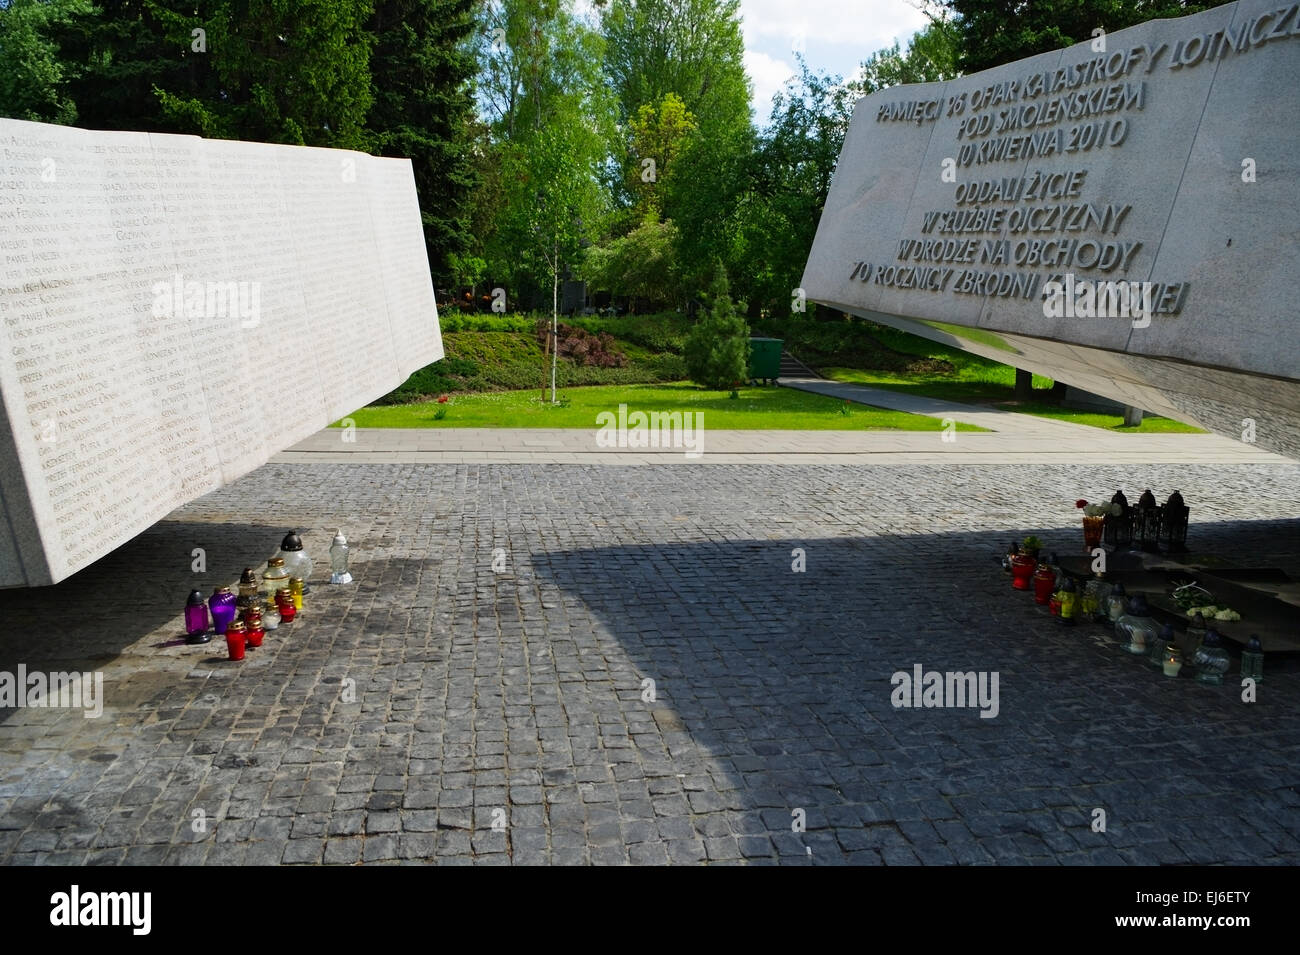 Cimetière militaire de Powazki à Varsovie, Pologne. Monument commémore 96 victimes d'accident d'avion du gouvernement polonais en avril 2010. Banque D'Images